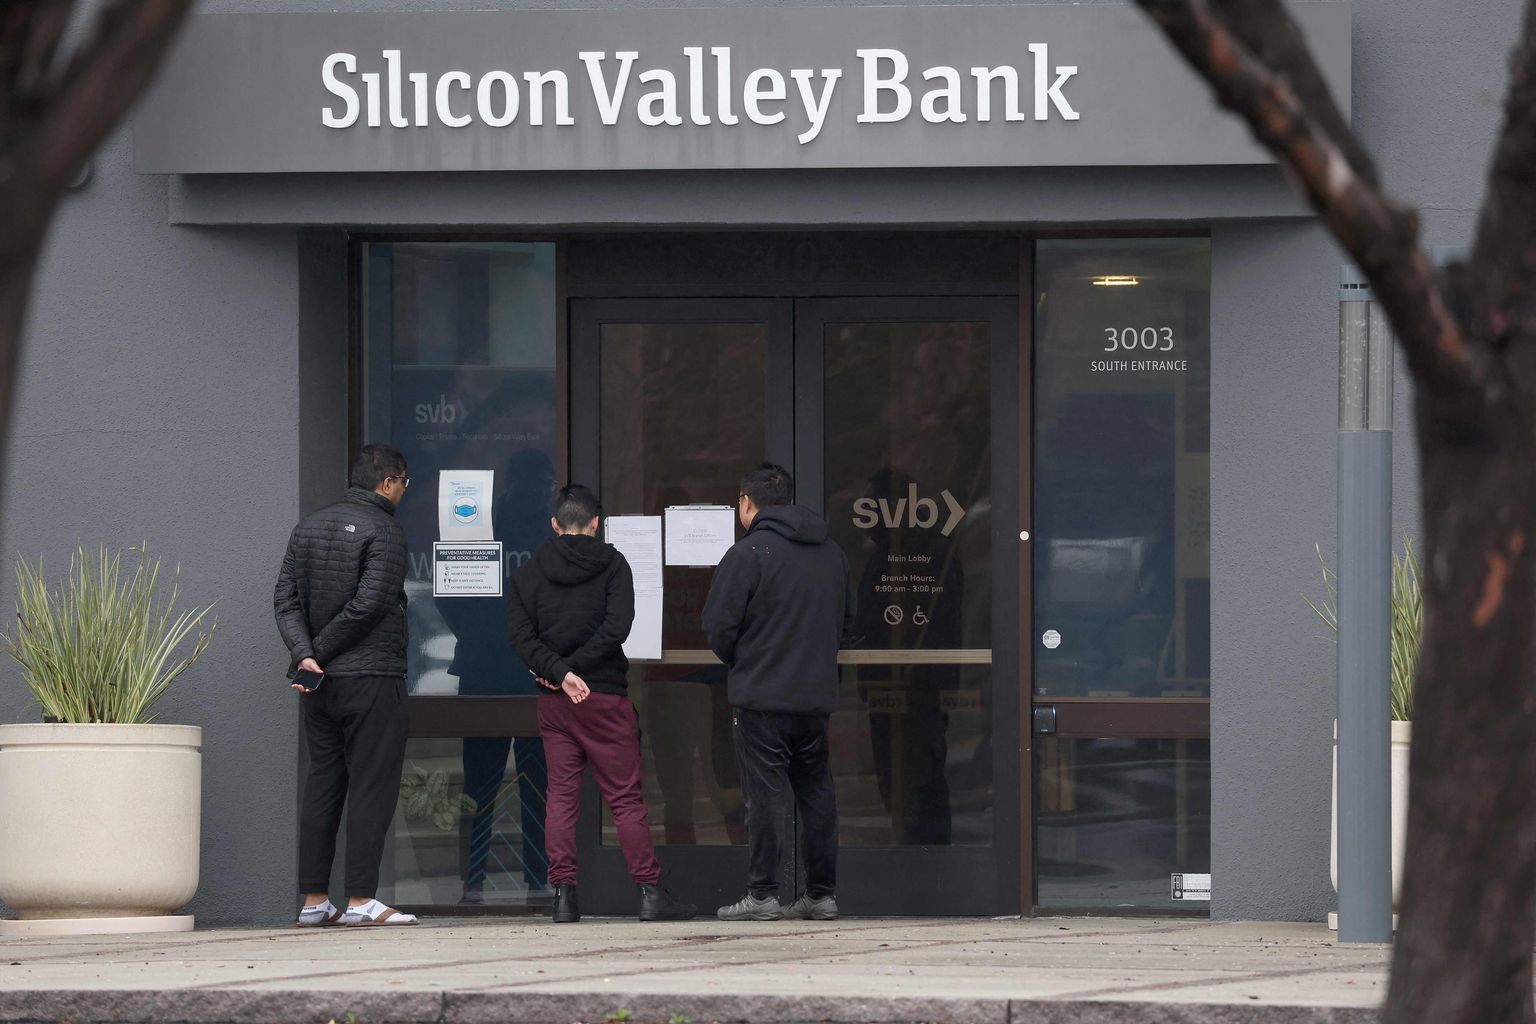 "Silicon Valley Bank".